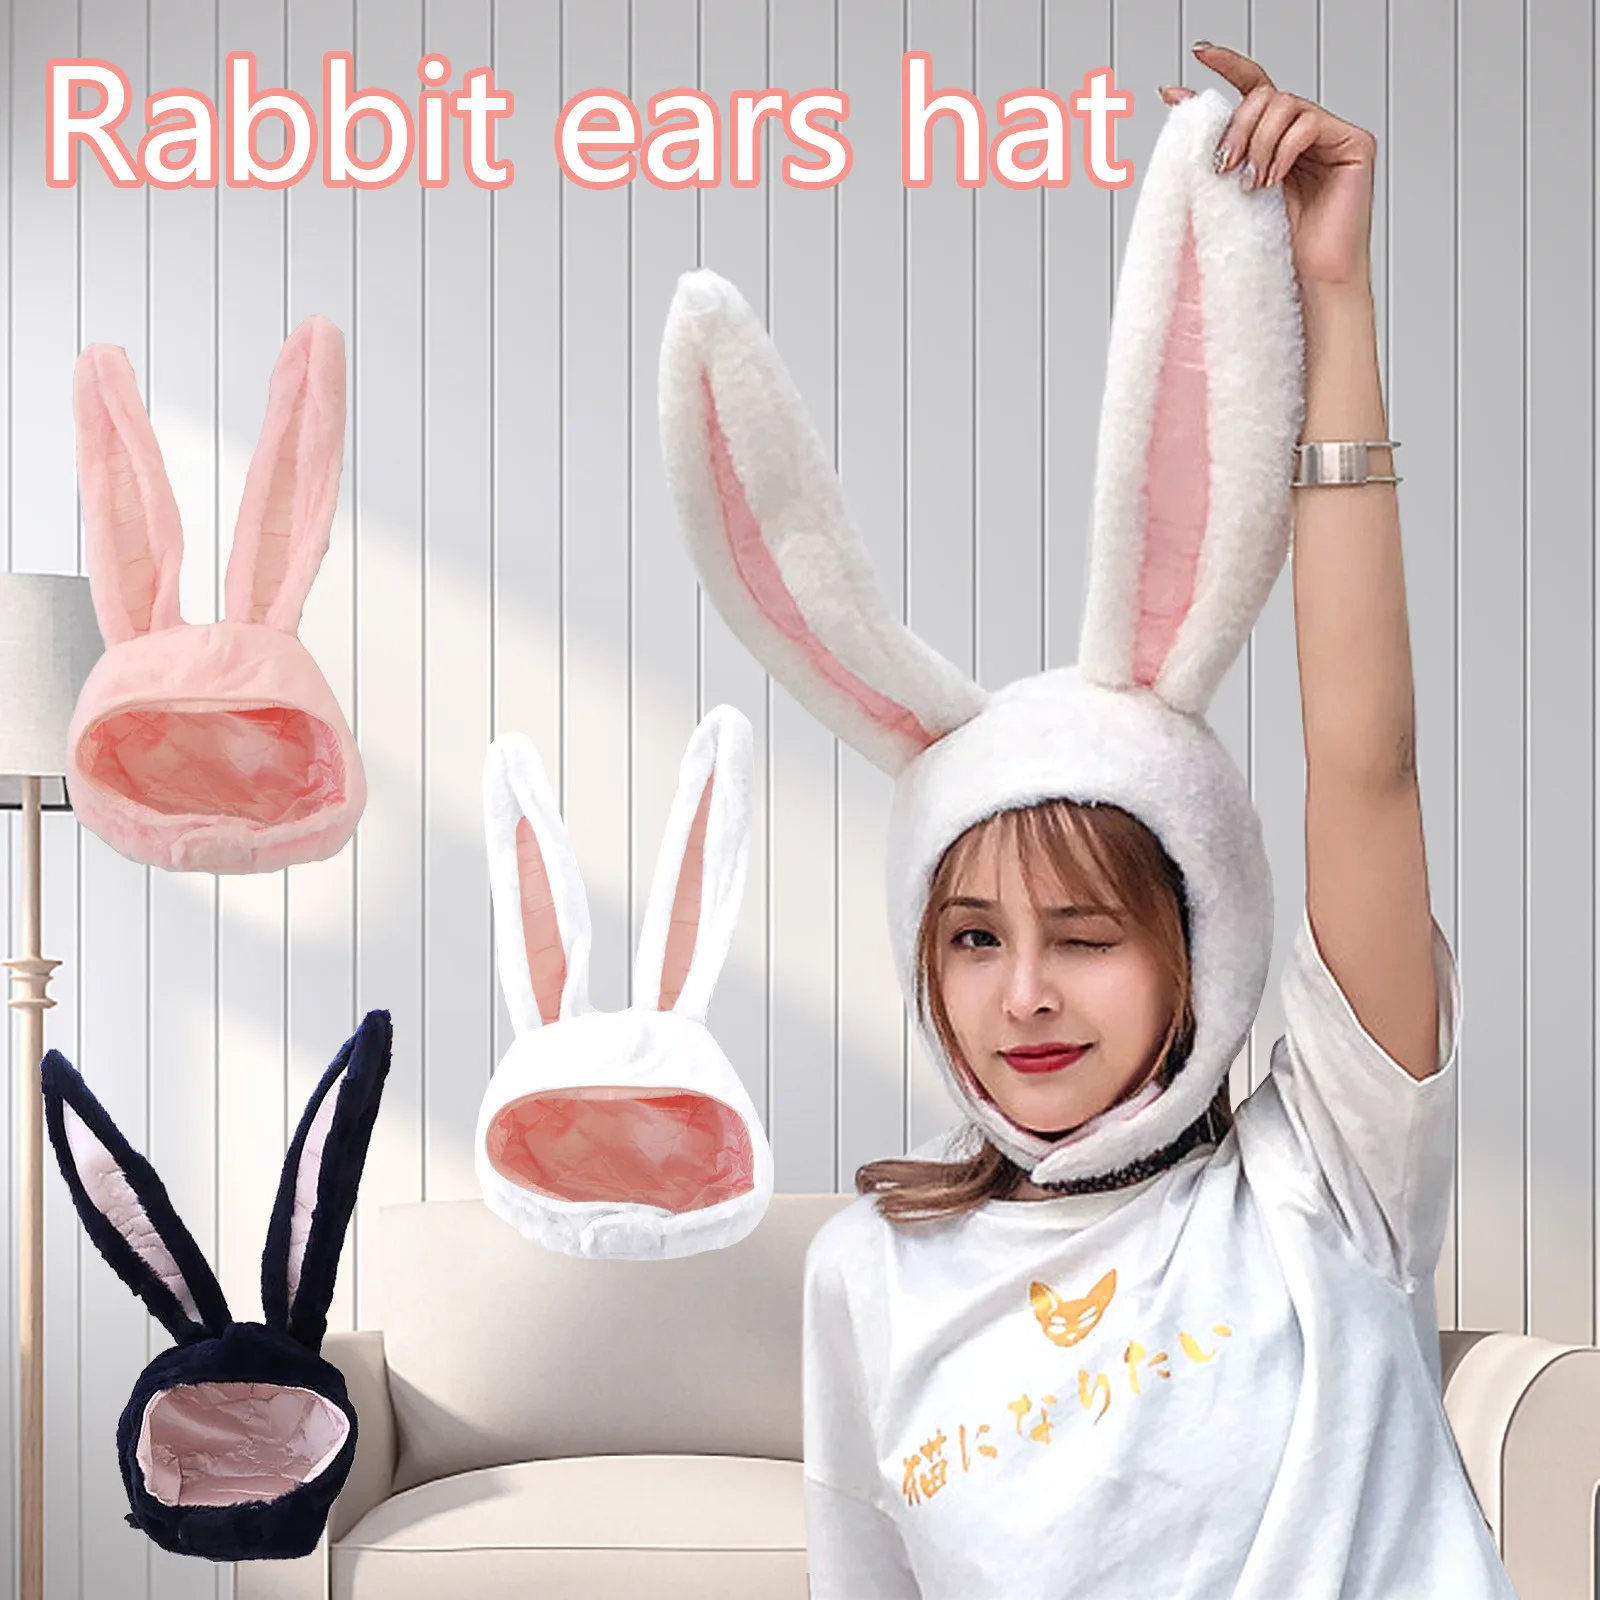 Women Men Funny Plush Bunny Ears Hood Hat Cute Rabbit Eastern Cosplay Costume Accessory Headwear Halloween Party Props cute gift |